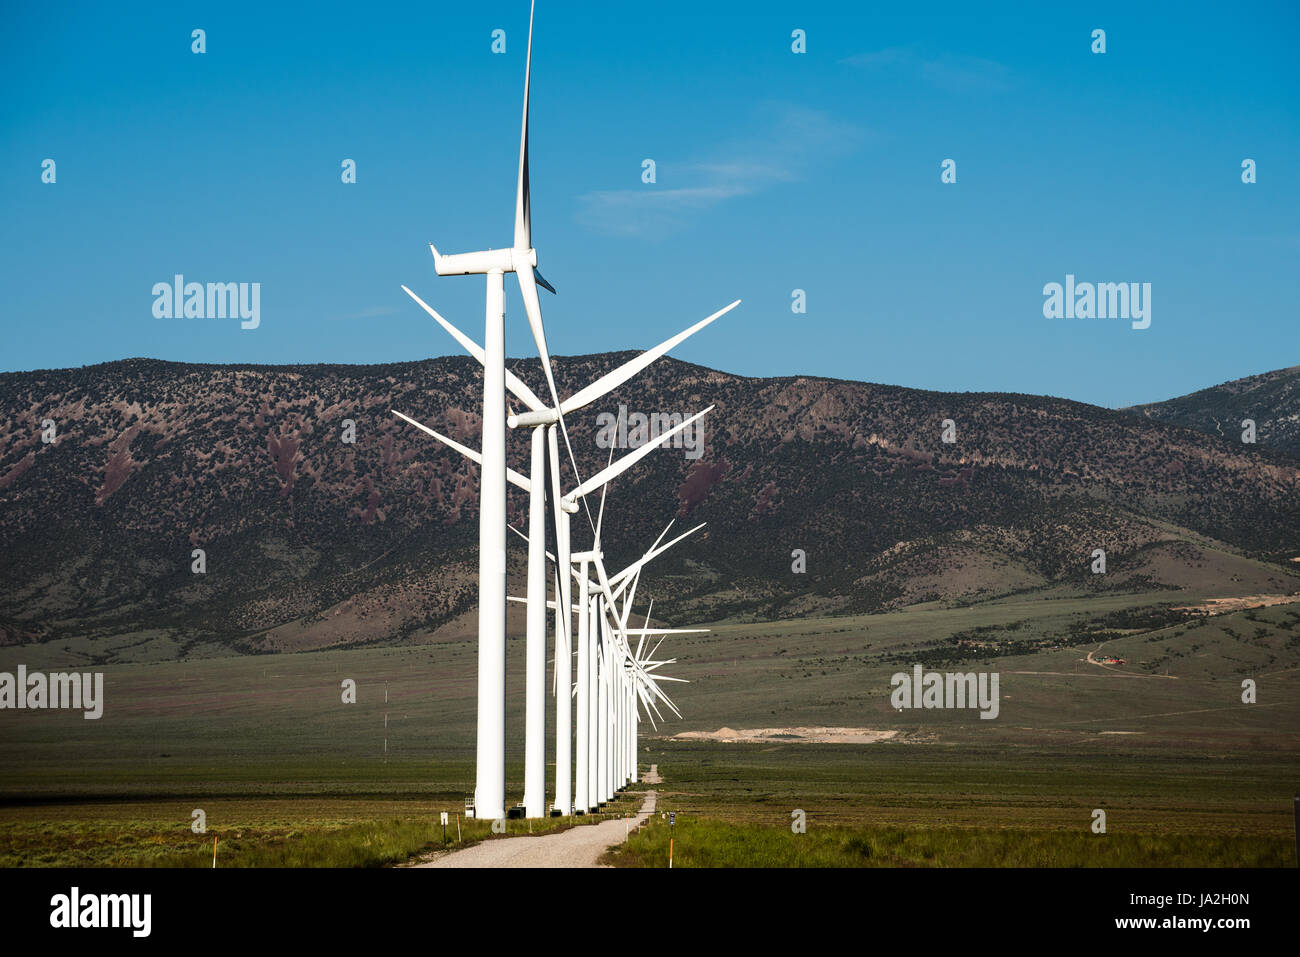 La valle di primavera Wind Farm, vicino a Ely, Nevada e il Parco nazionale Great Basin. Foto Stock